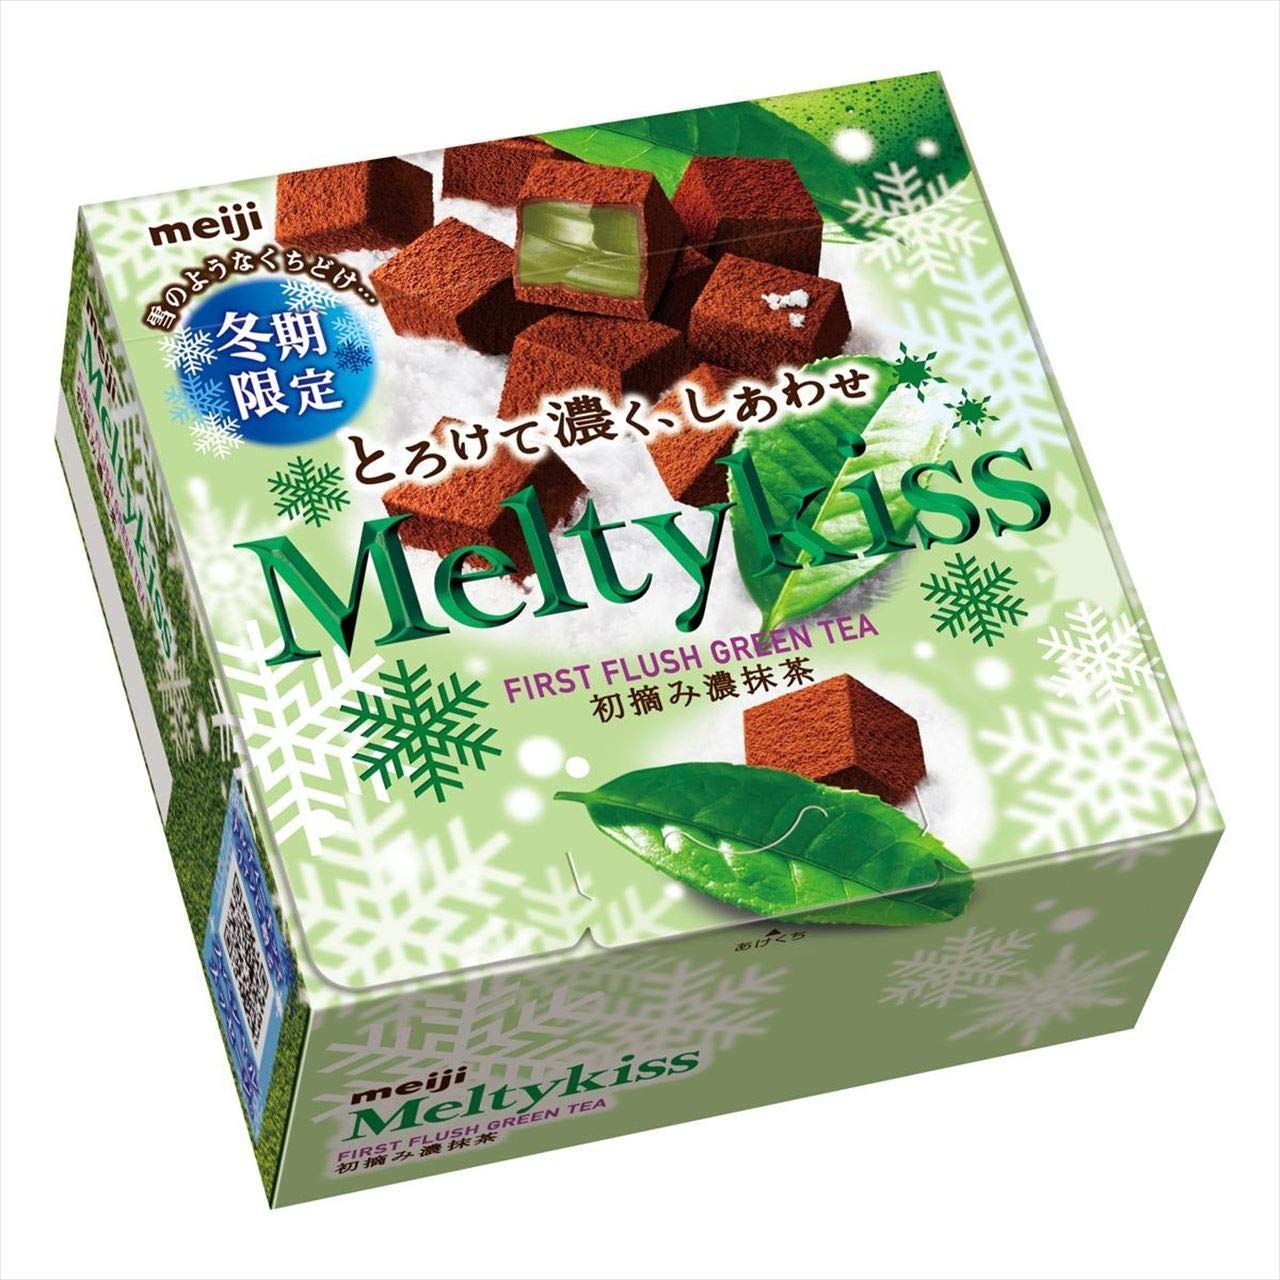 Шоколадные конфеты с чаем Матча Melty Kiss - Premium Chocolate Meigi 56 гр, Япония